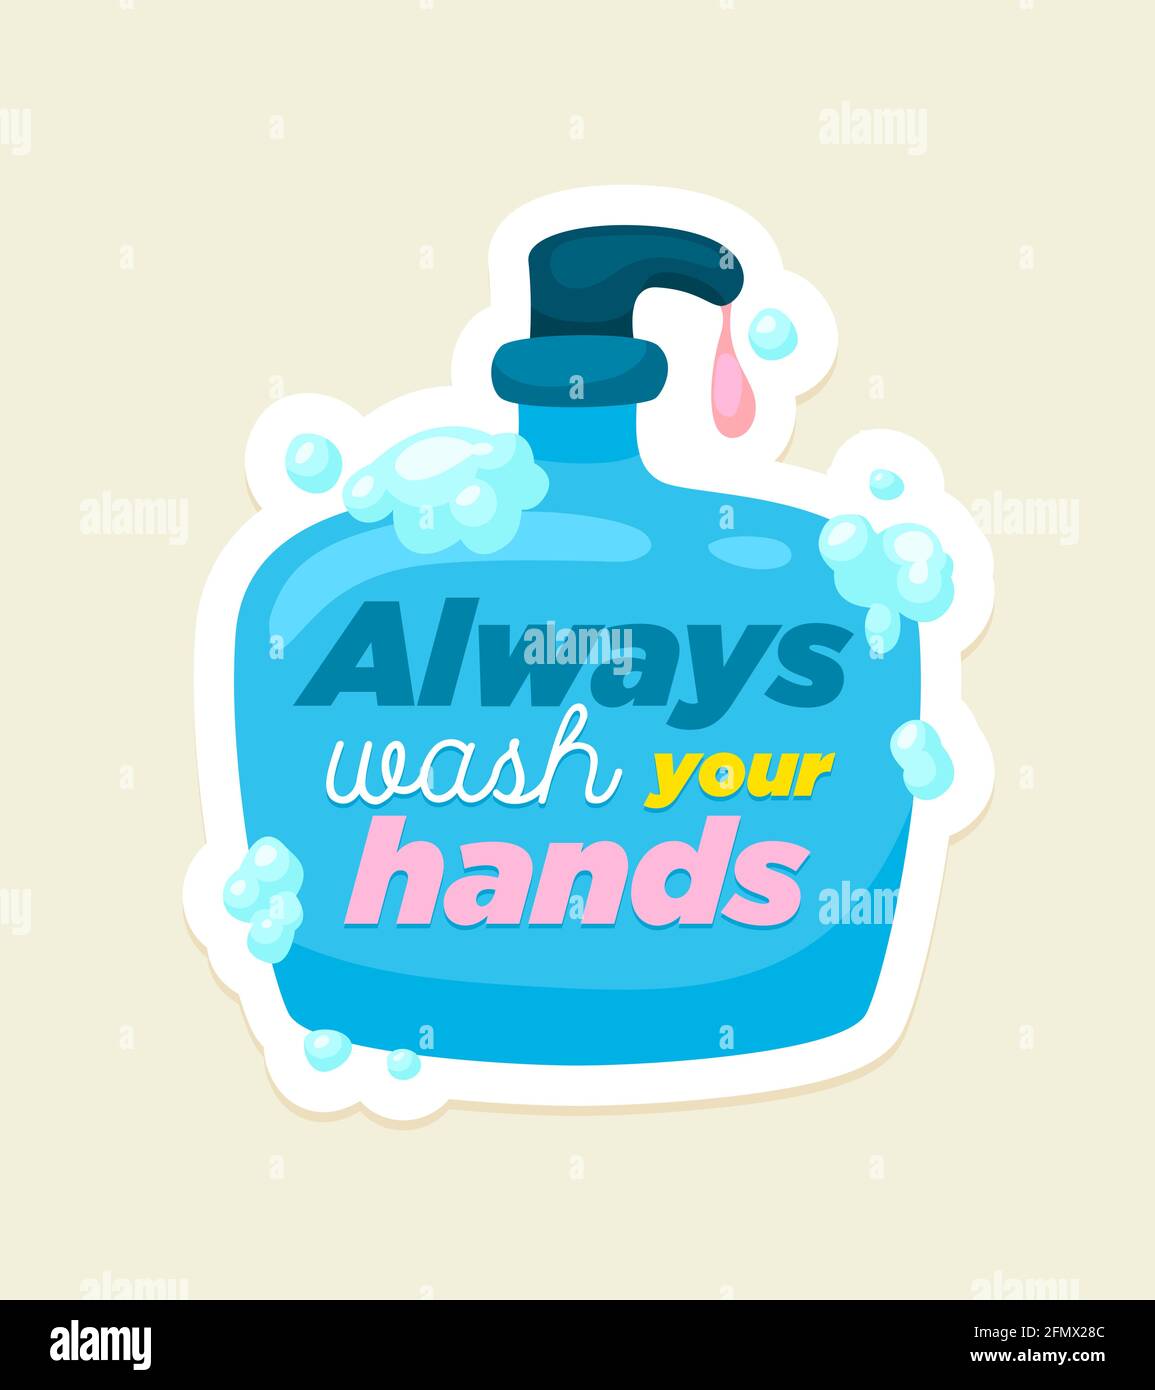 Vektorposter für Körperhygiene. Waschen Sie sich immer die Hände mit Seifenflasche und Schriftzug Konzept gesunde Lebensweise. Stock Vektor